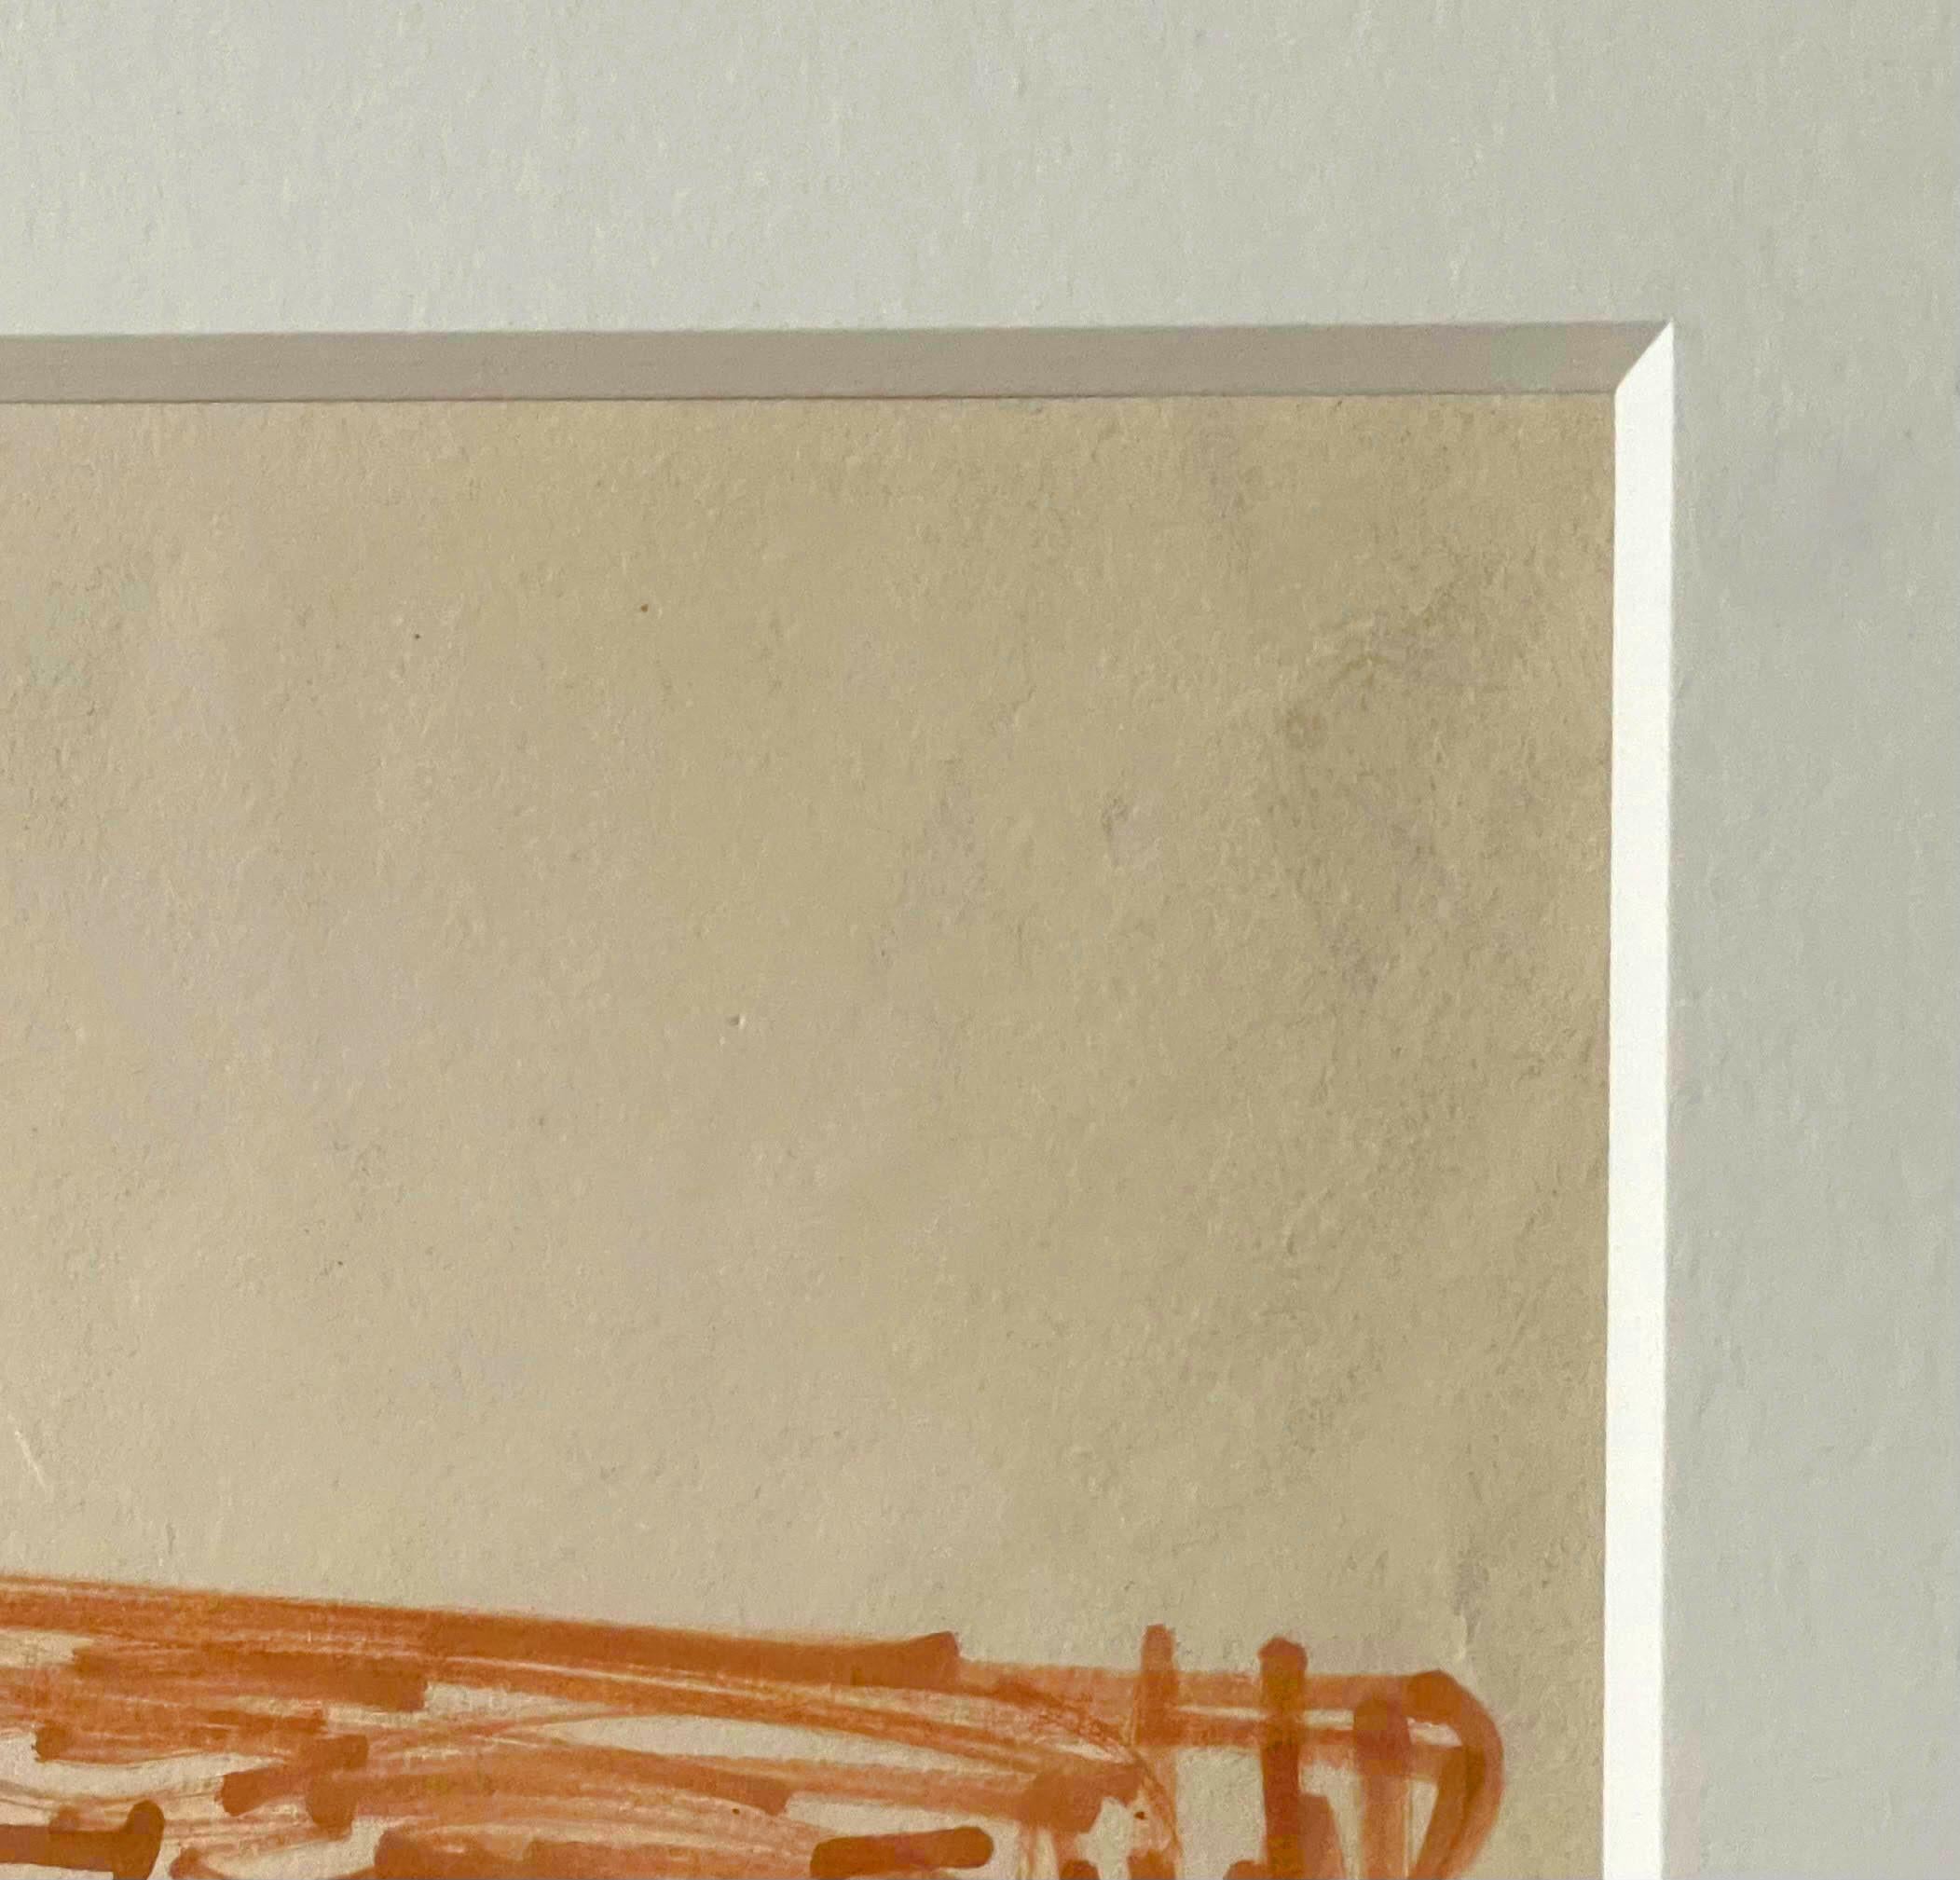 Dorothy Dehner
Abstrakte skulpturale Zeichnung ohne Titel aus der Mitte des Jahrhunderts, 1955
Marker und Graphit auf Papier
Signiert und datiert von Dorothy Dehner mit schwarzem Filzstift auf der Vorderseite
Inklusive Rahmen: Elegant mattiert und